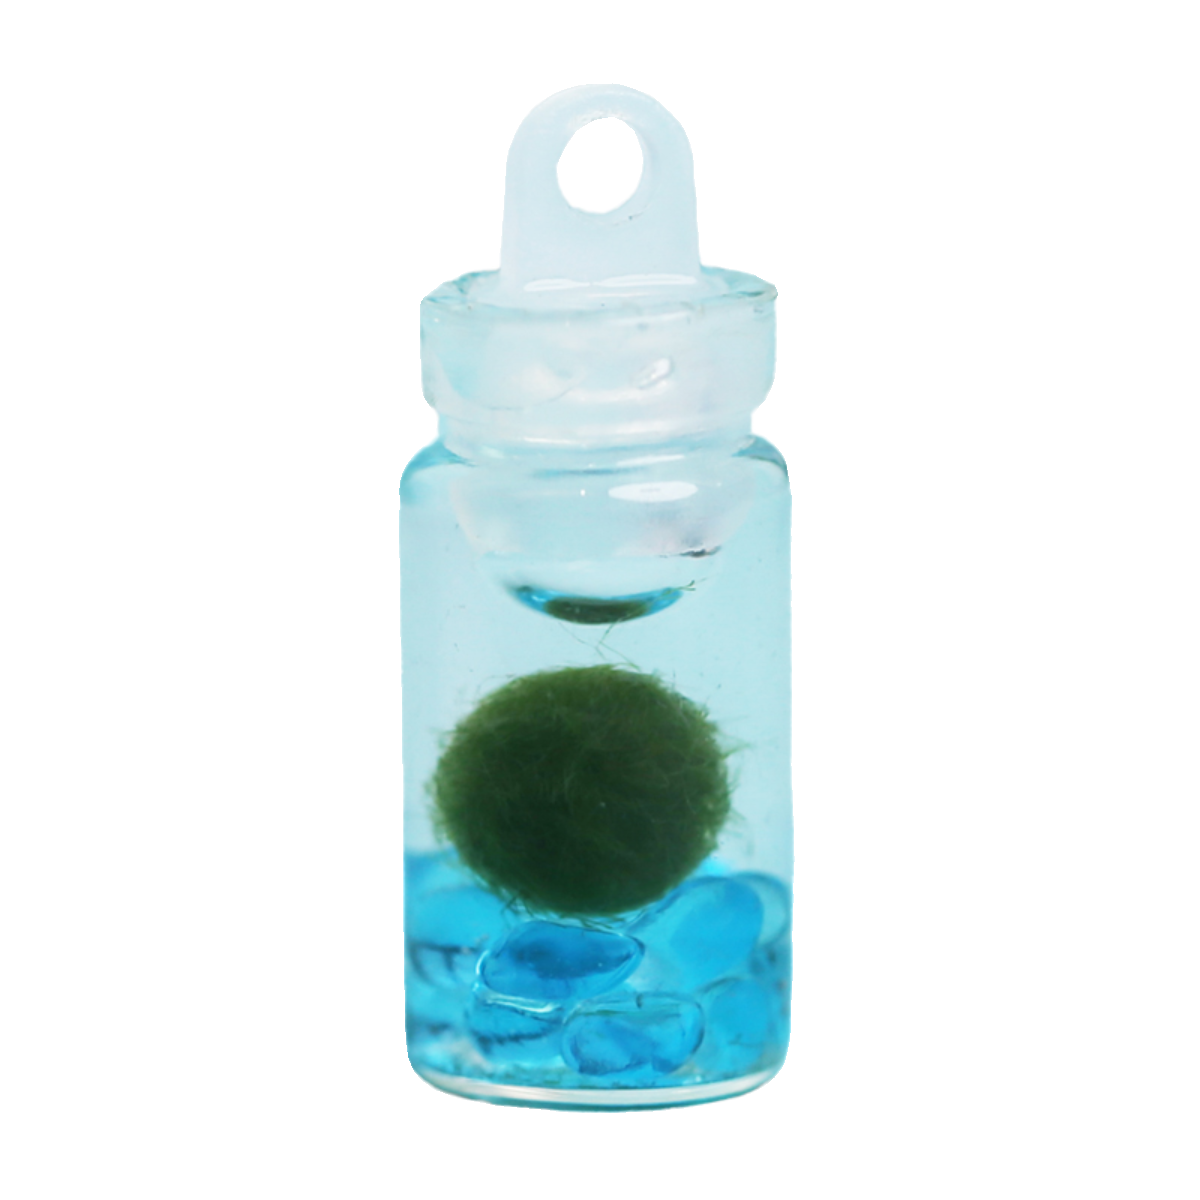 marimo海藻球生态瓶小挂件饰品礼物学生迷你绿植水生球藻绿藻生物 - 图3